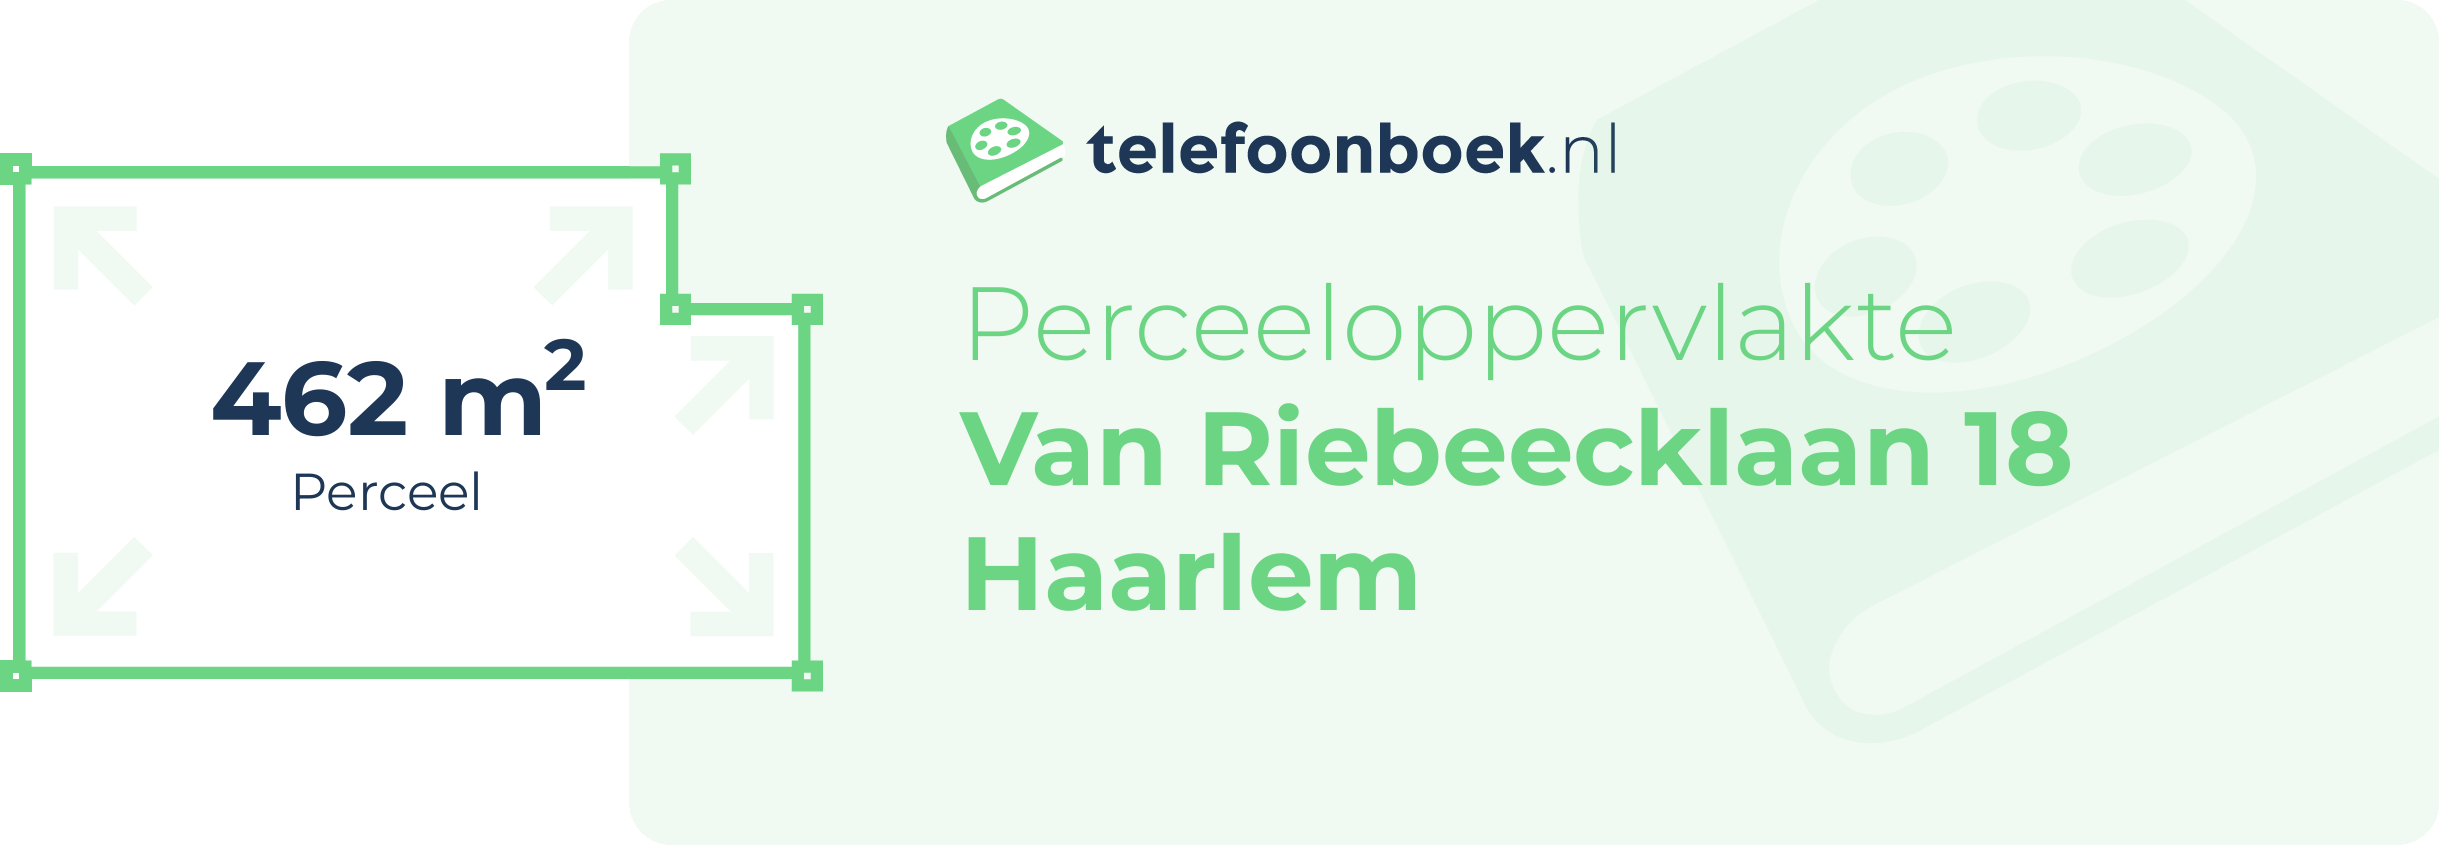 Perceeloppervlakte Van Riebeecklaan 18 Haarlem